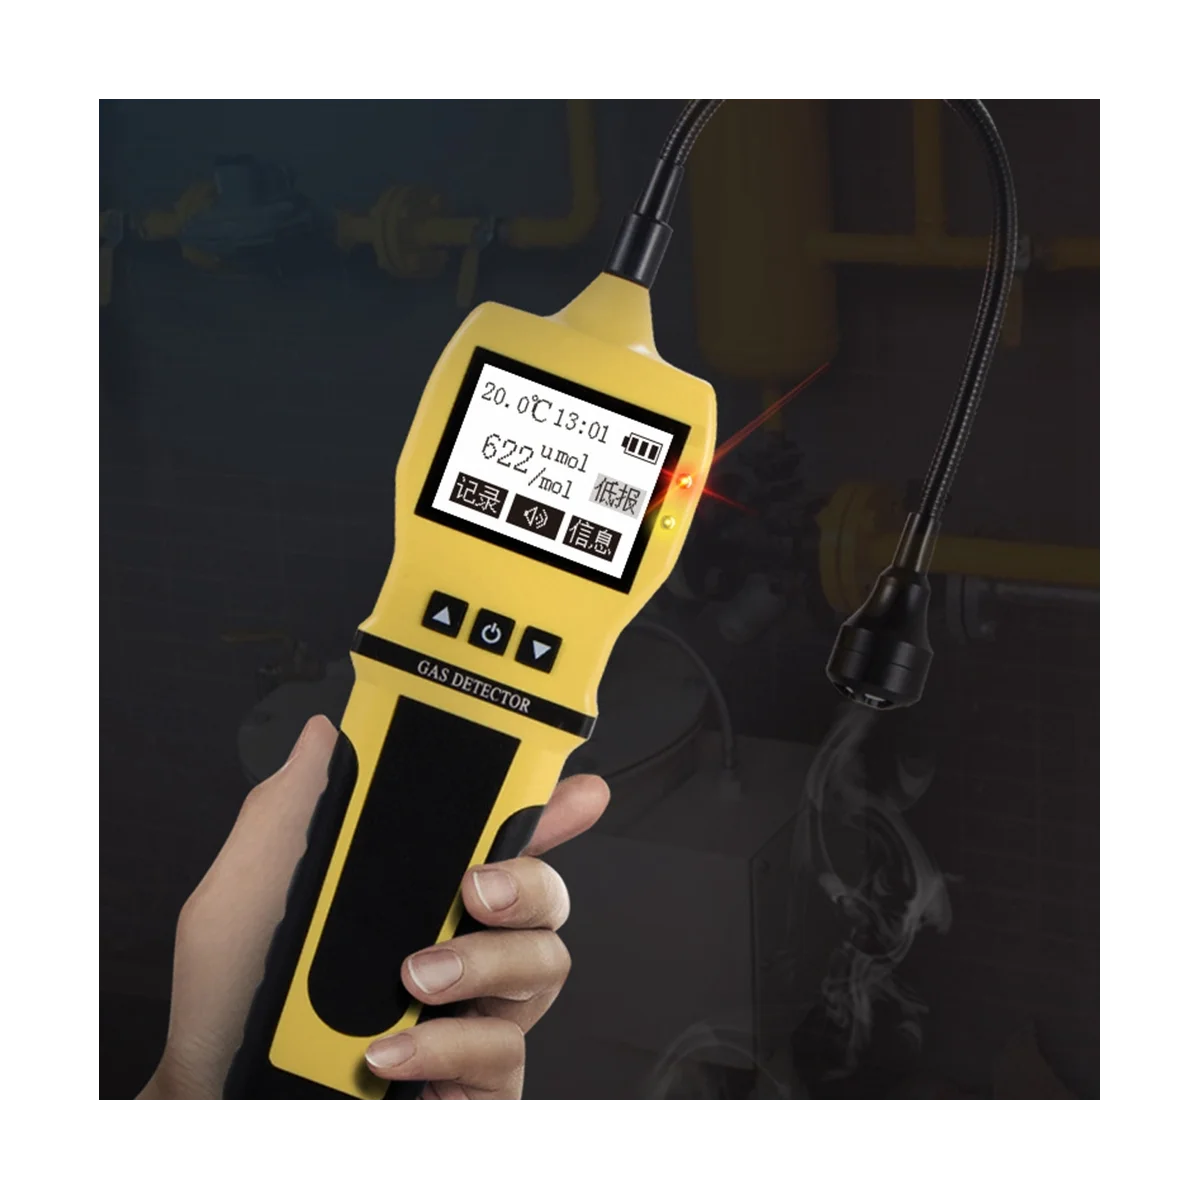 BH-90 Digitale Gaslekdetector 0-10000ppm Ch4 Natuurlijke Kolen Brandbaar Gas Snelle Analysator Sensor (Geel)